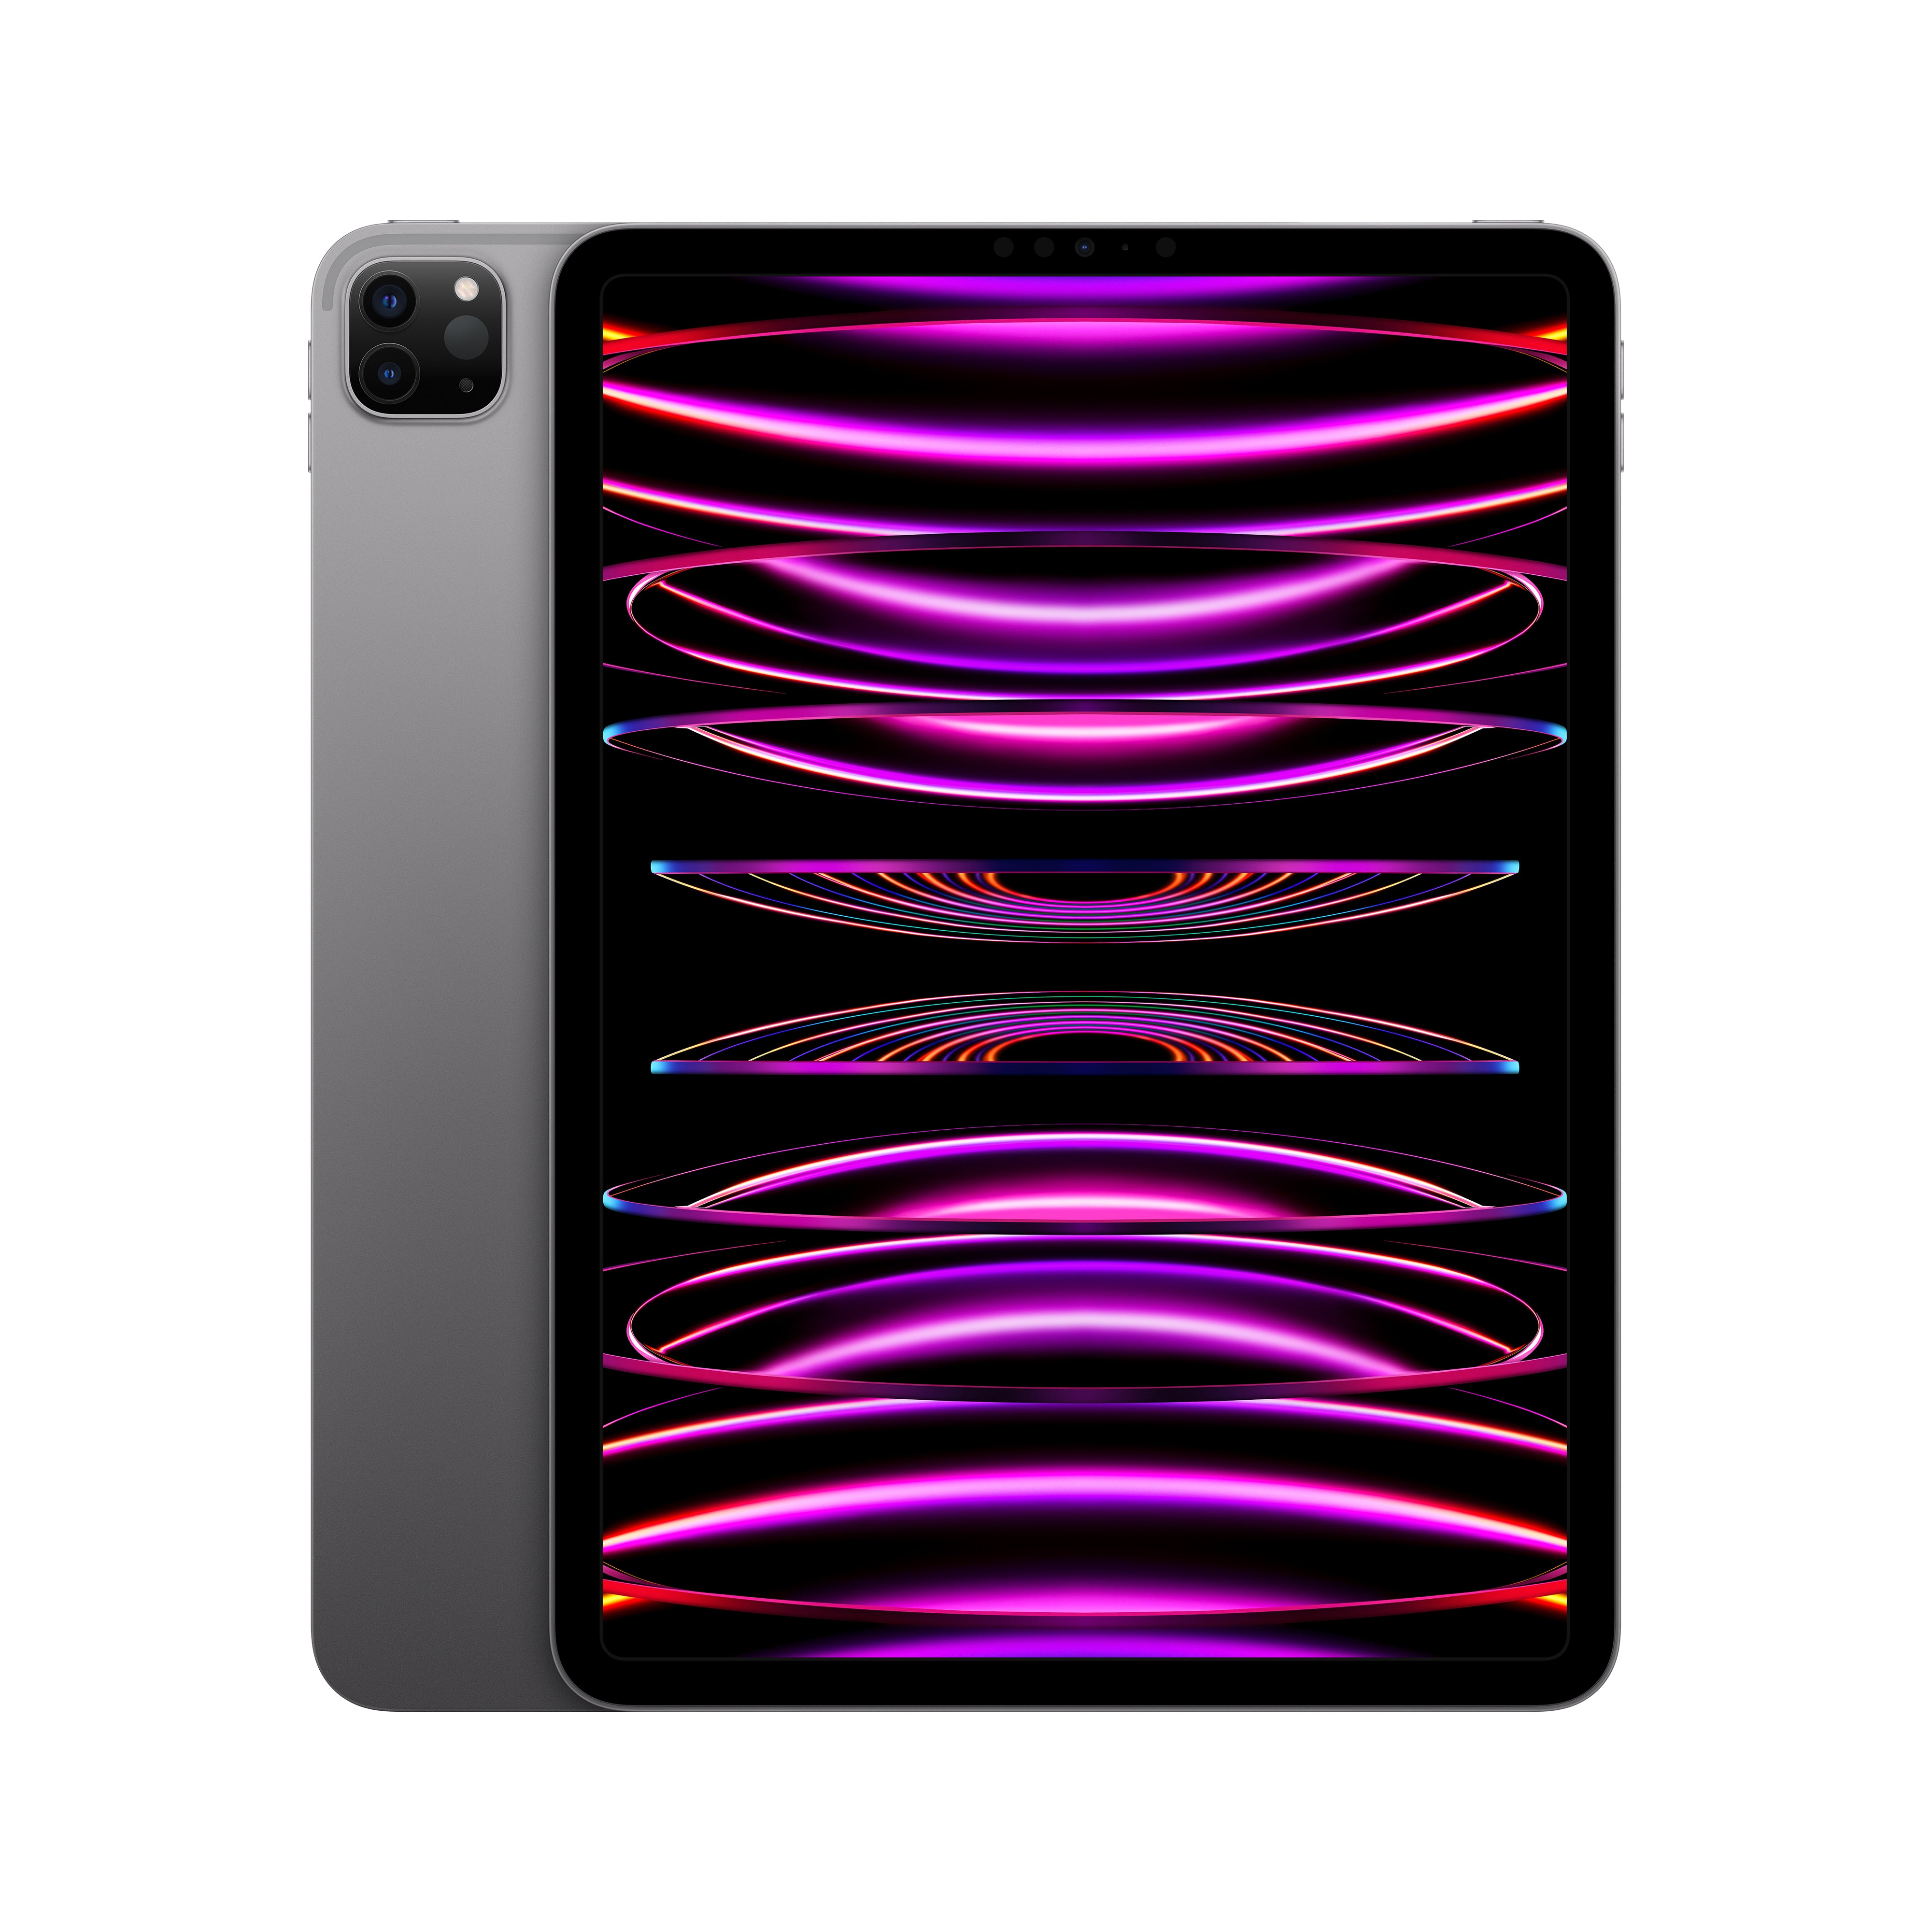 iPad Pro 11in (4th Gen) Wi-Fi 128GB - Space Grey